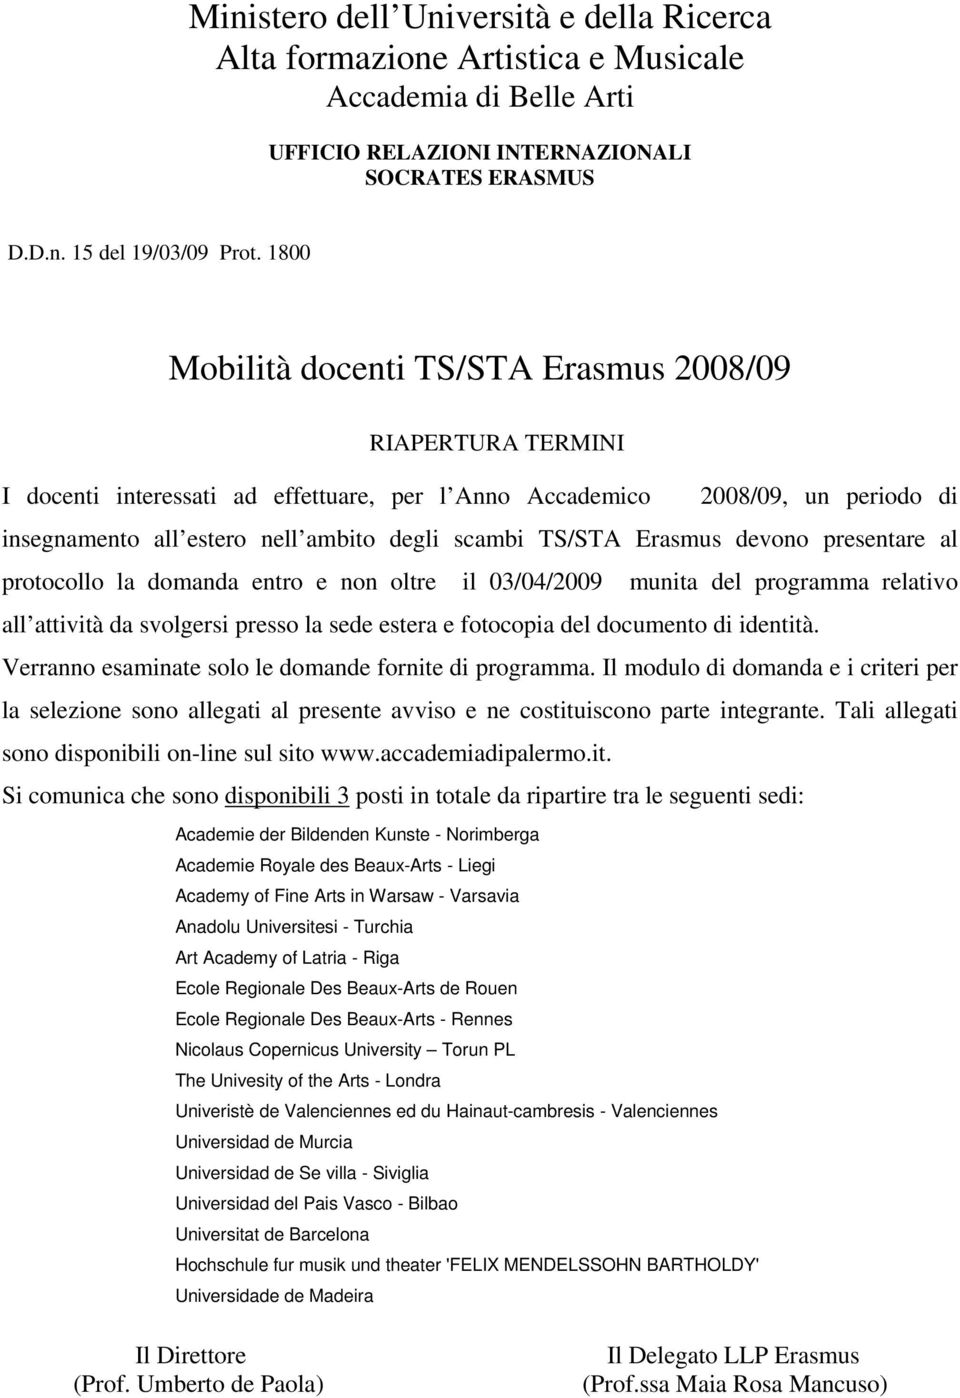 TS/STA Erasmus devono presentare al protocollo la domanda entro e non oltre il 03/04/2009 munita del programma relativo all attività da svolgersi presso la sede estera e fotocopia del documento di